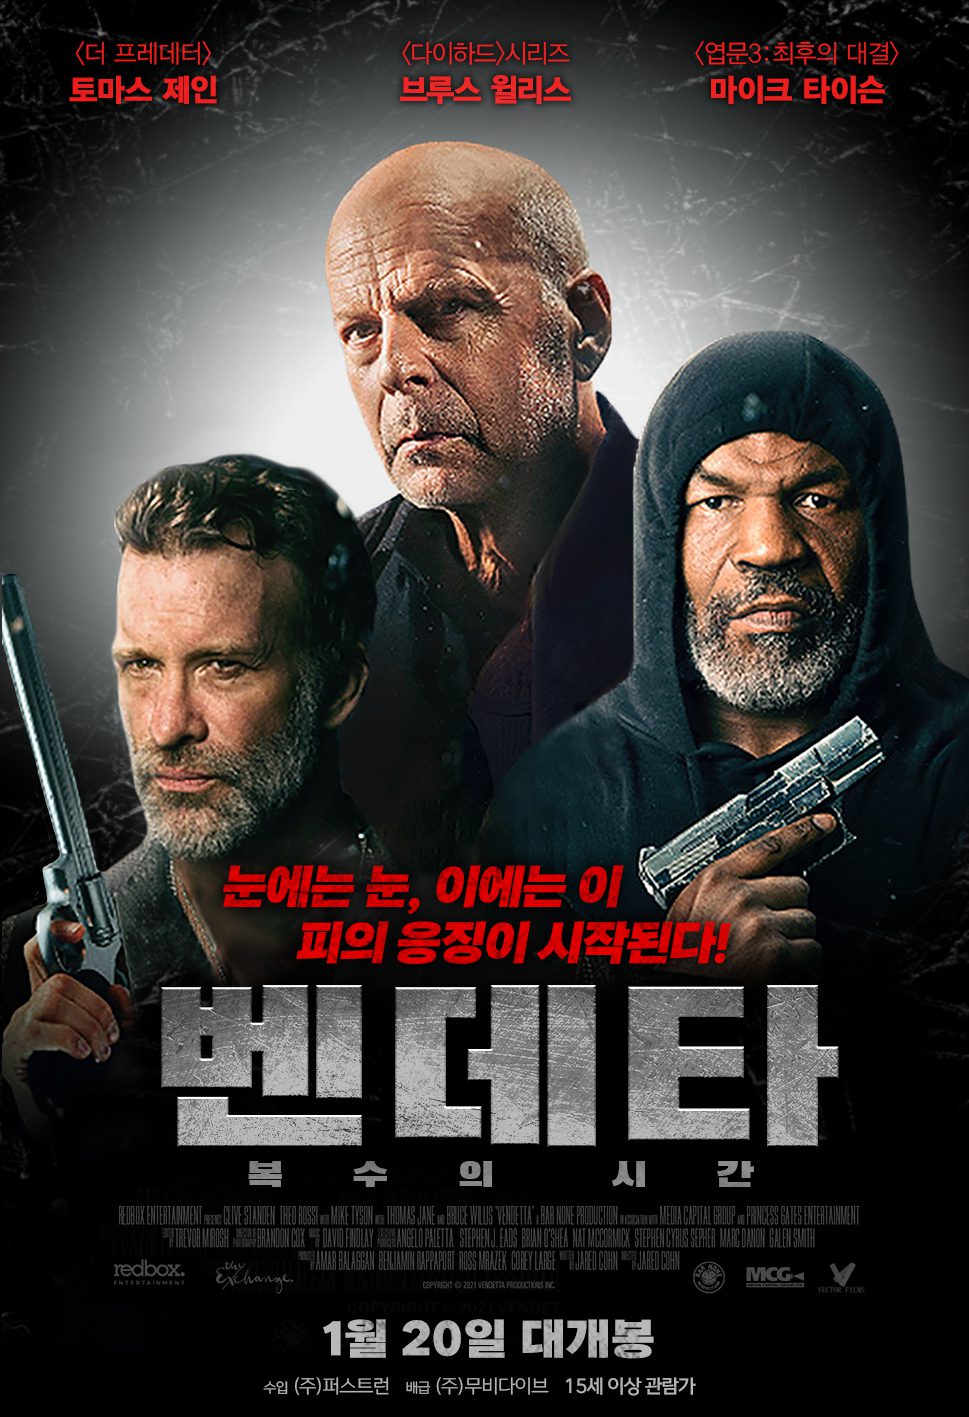 액션장르 영화 “벤데타: 복수의 시간” 개봉소식